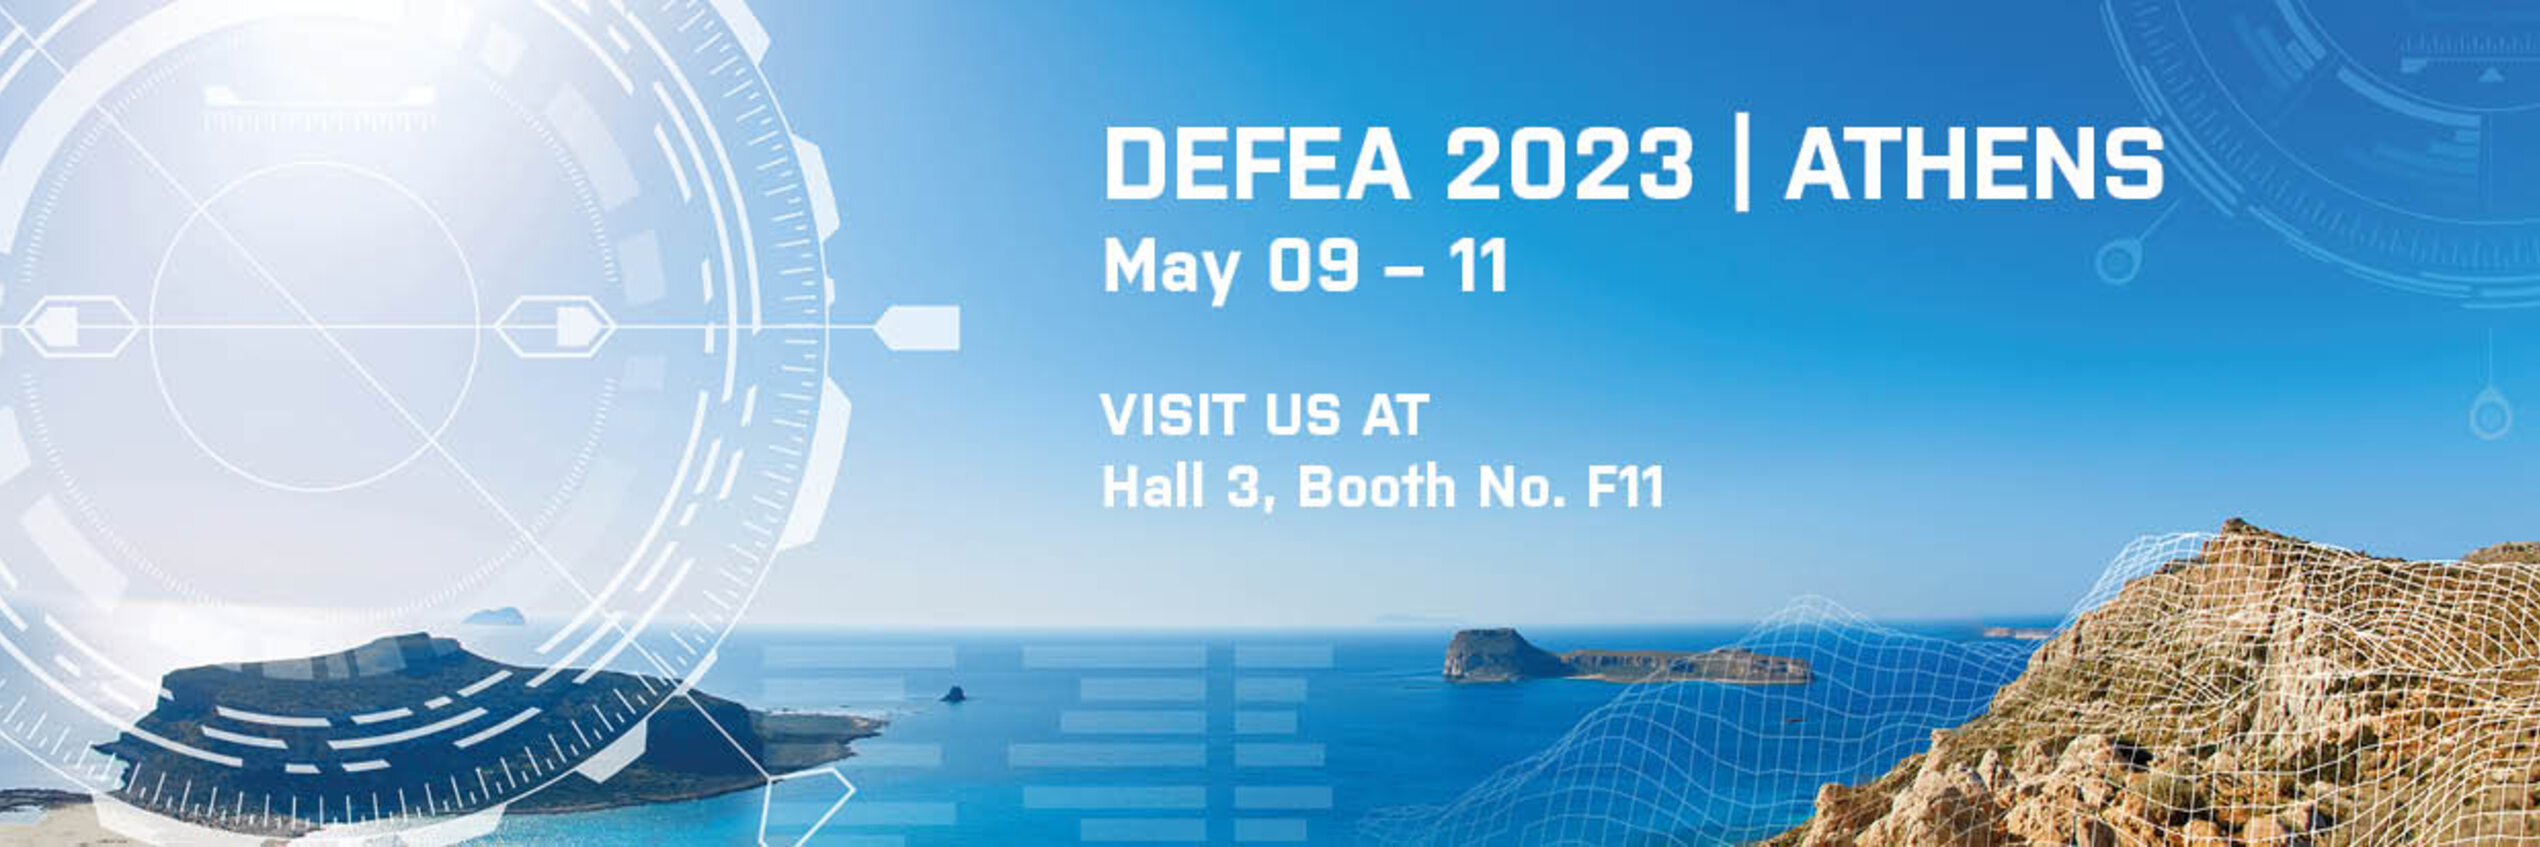 Diehl Defence nimmt an der Defence Exhibition Athens (DEFEA) 2023 teil